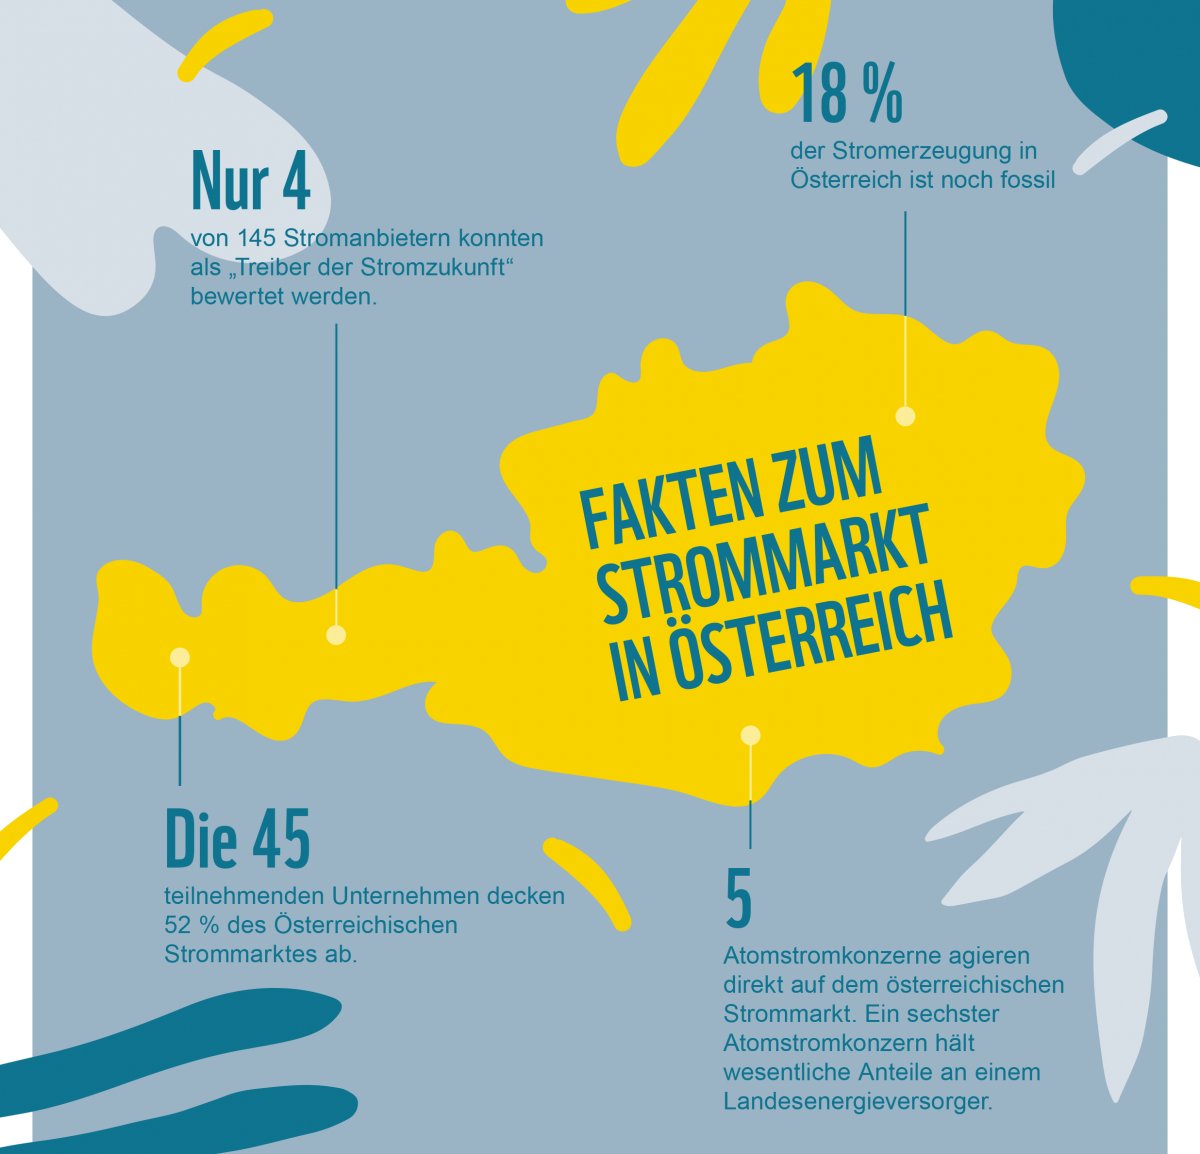 Eine Grafik bei der um den Umriss Österreichs verschiedene Strommarkt-Fakten beschrieben werden.